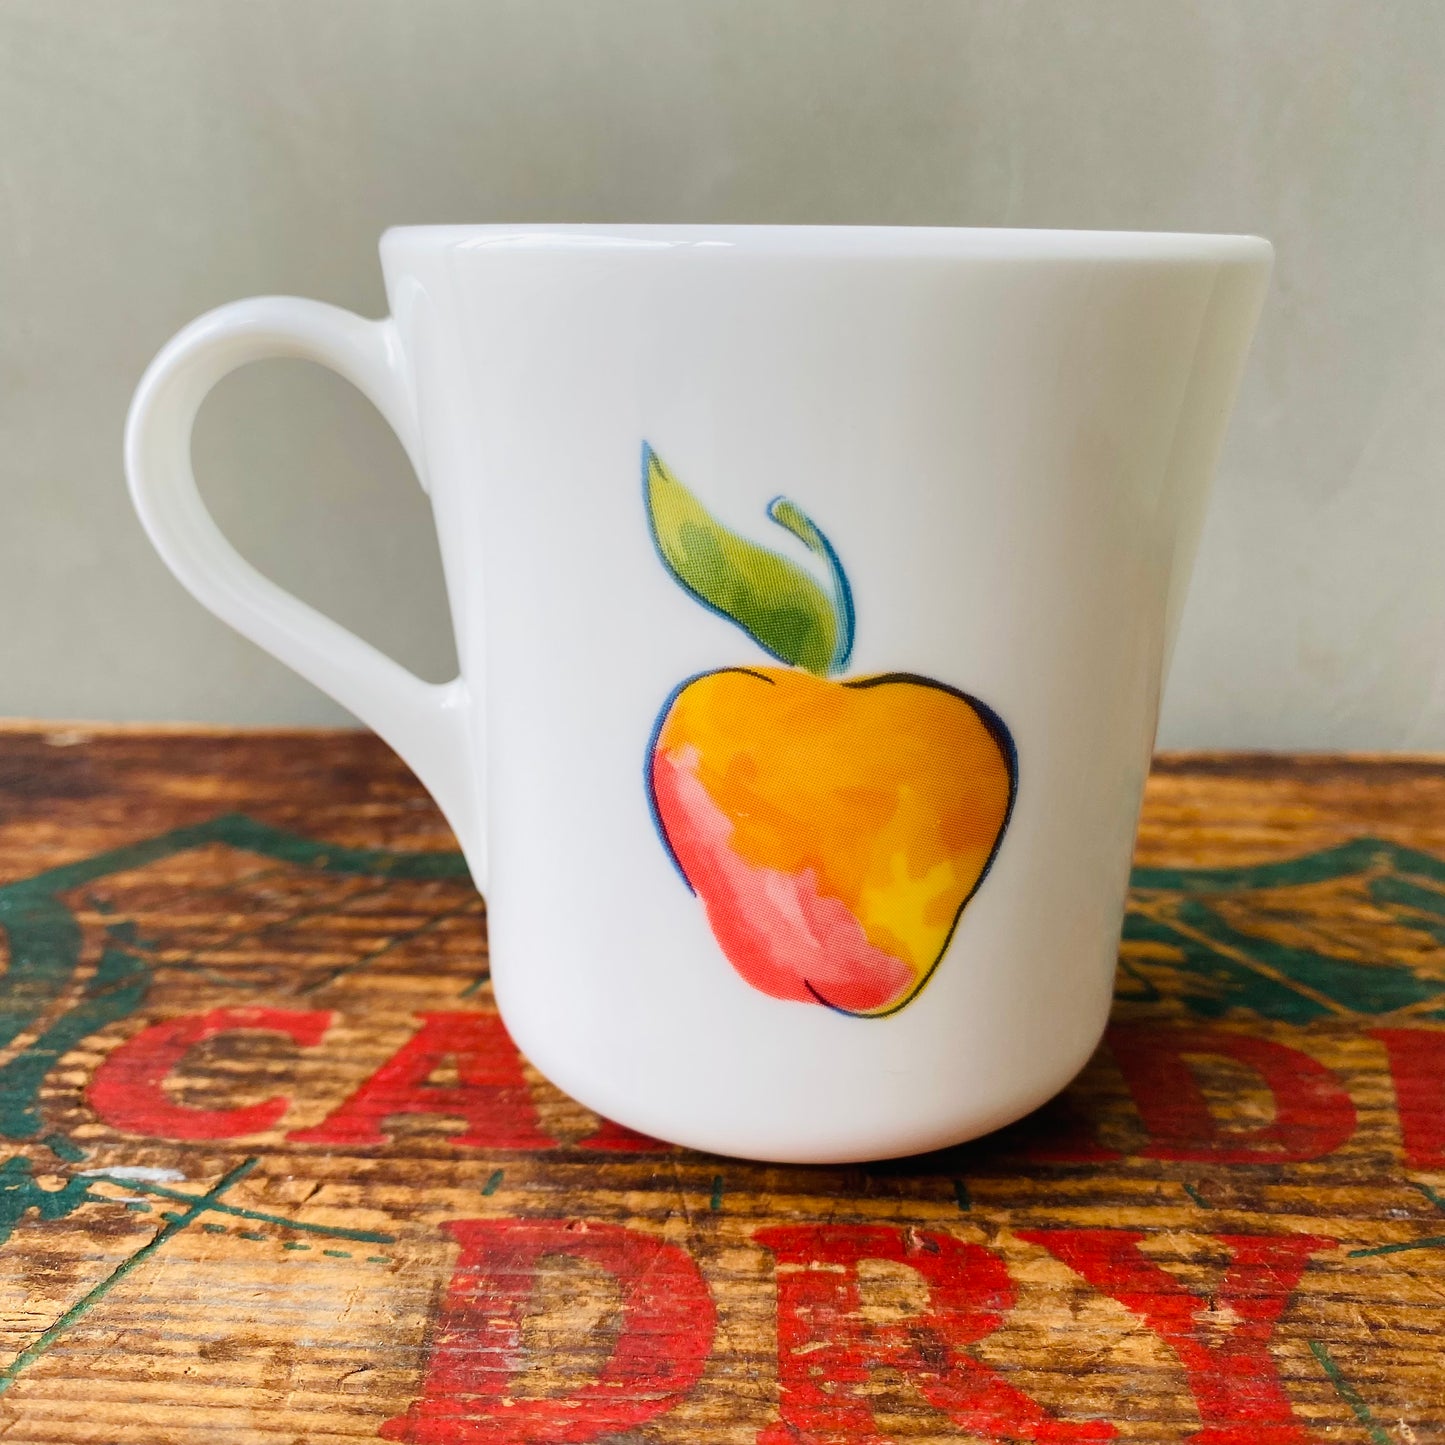 【USA vintage】CORNING mug fruits